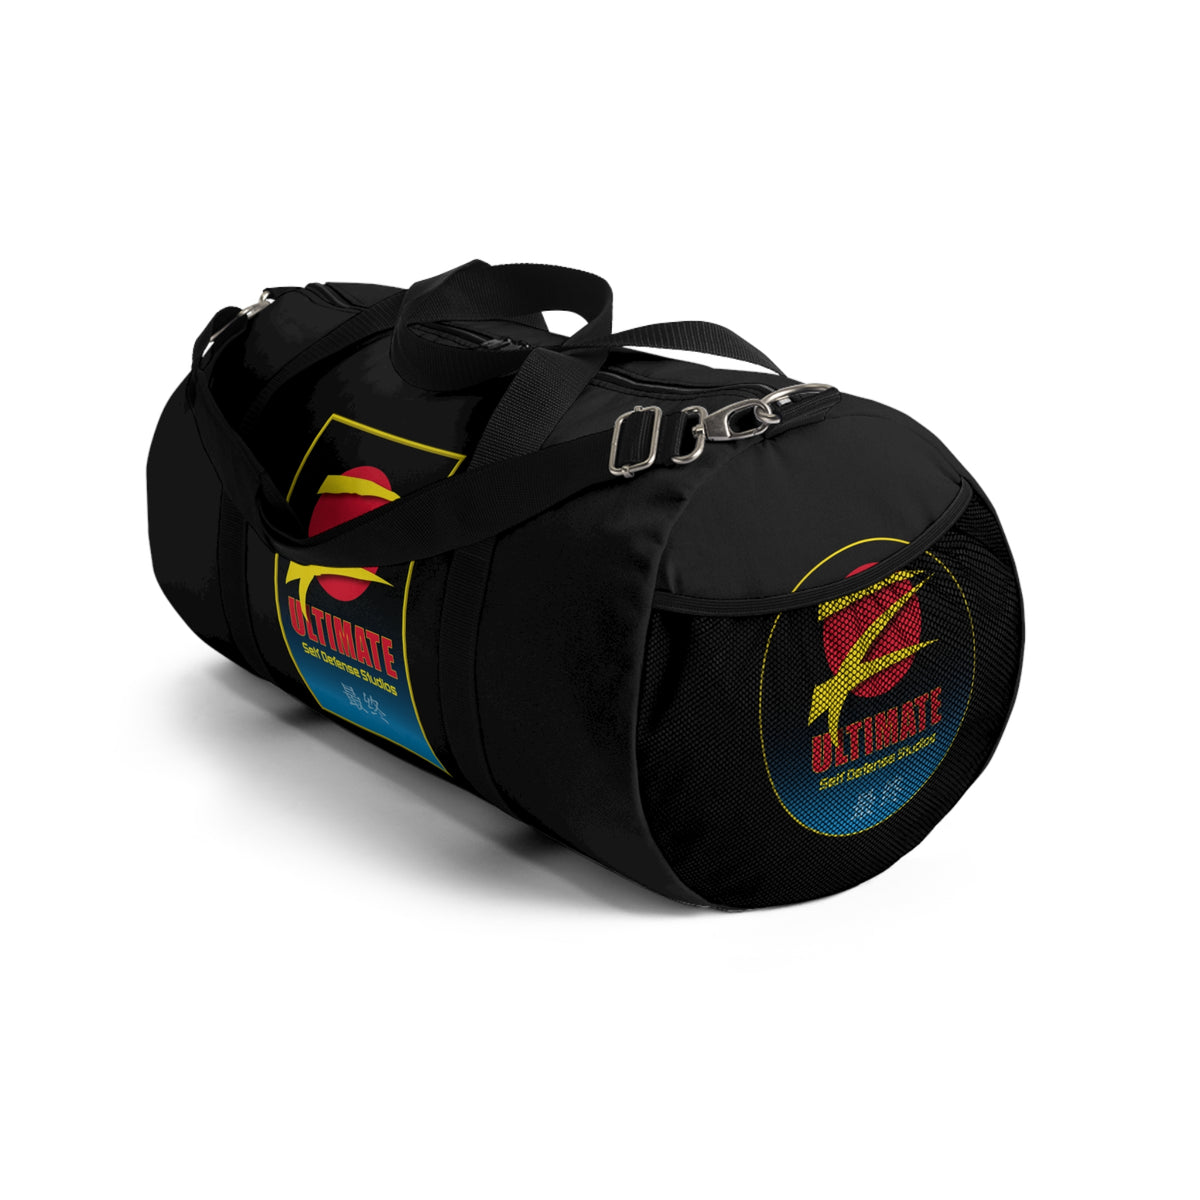 Z-Ultimate Black Duffel Bag - Black